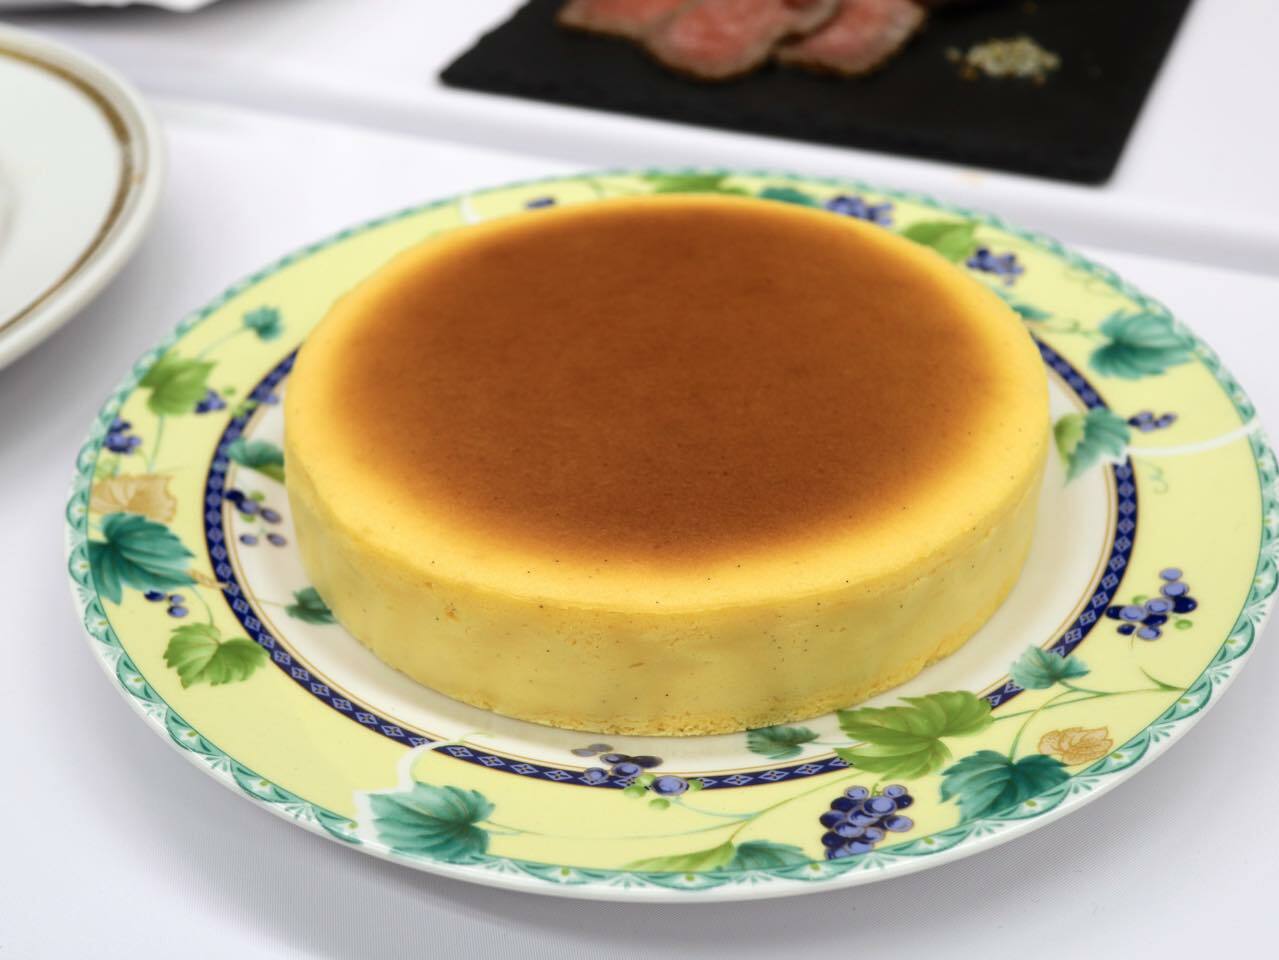 「チーズケーキ」3800円